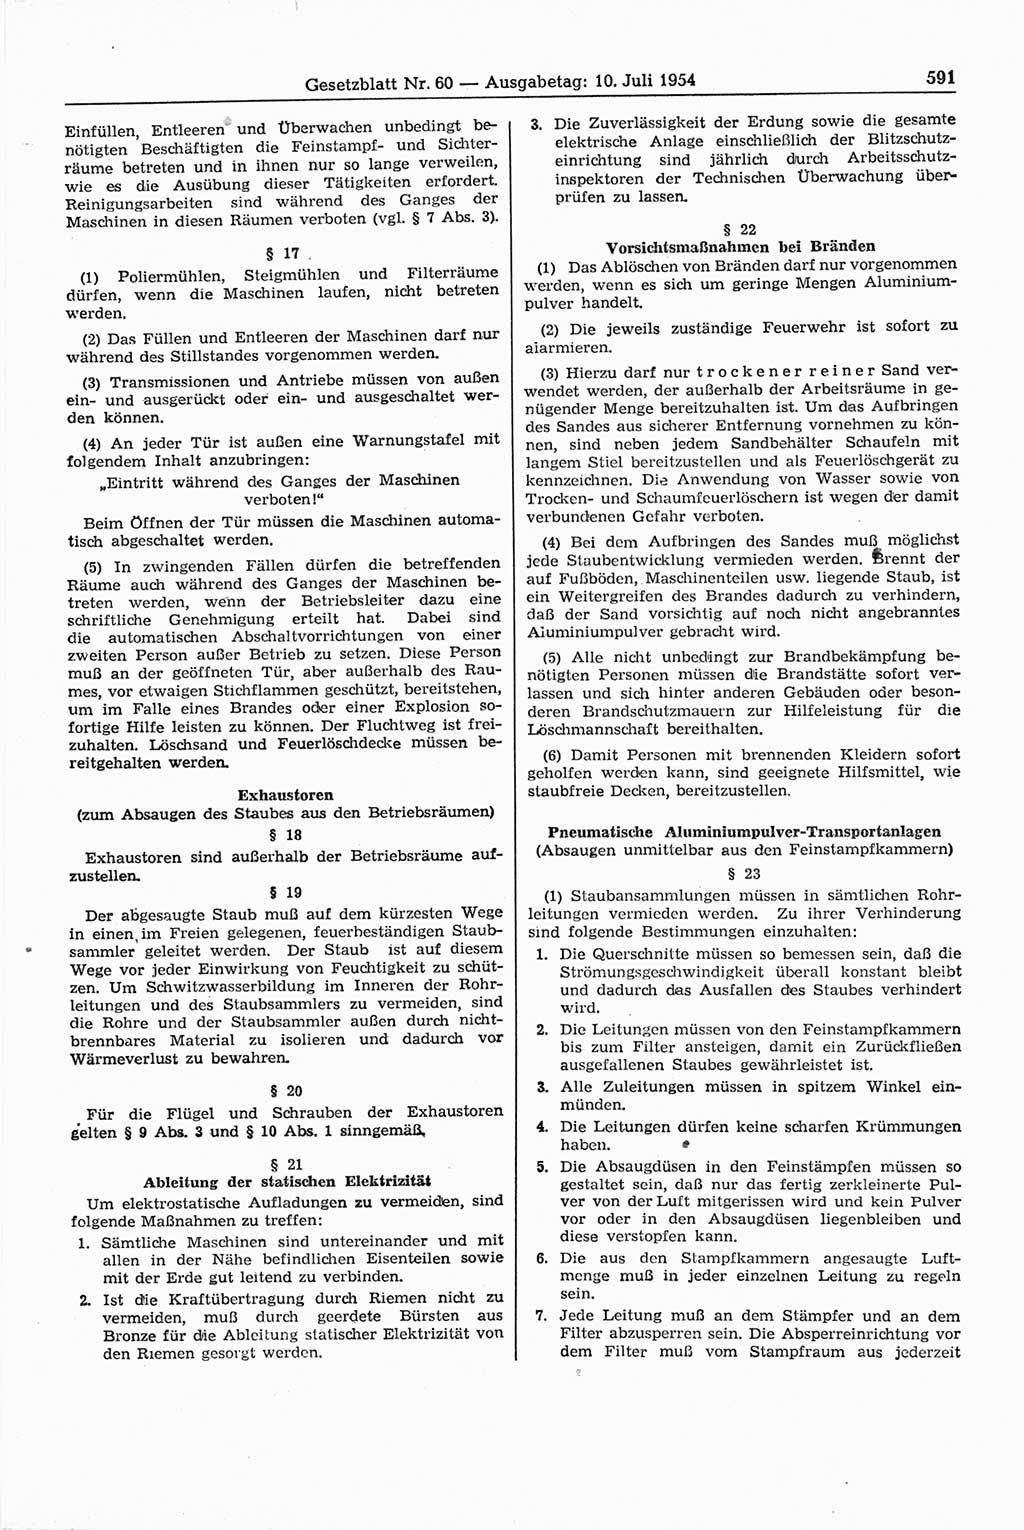 Gesetzblatt (GBl.) der Deutschen Demokratischen Republik (DDR) 1954, Seite 591 (GBl. DDR 1954, S. 591)